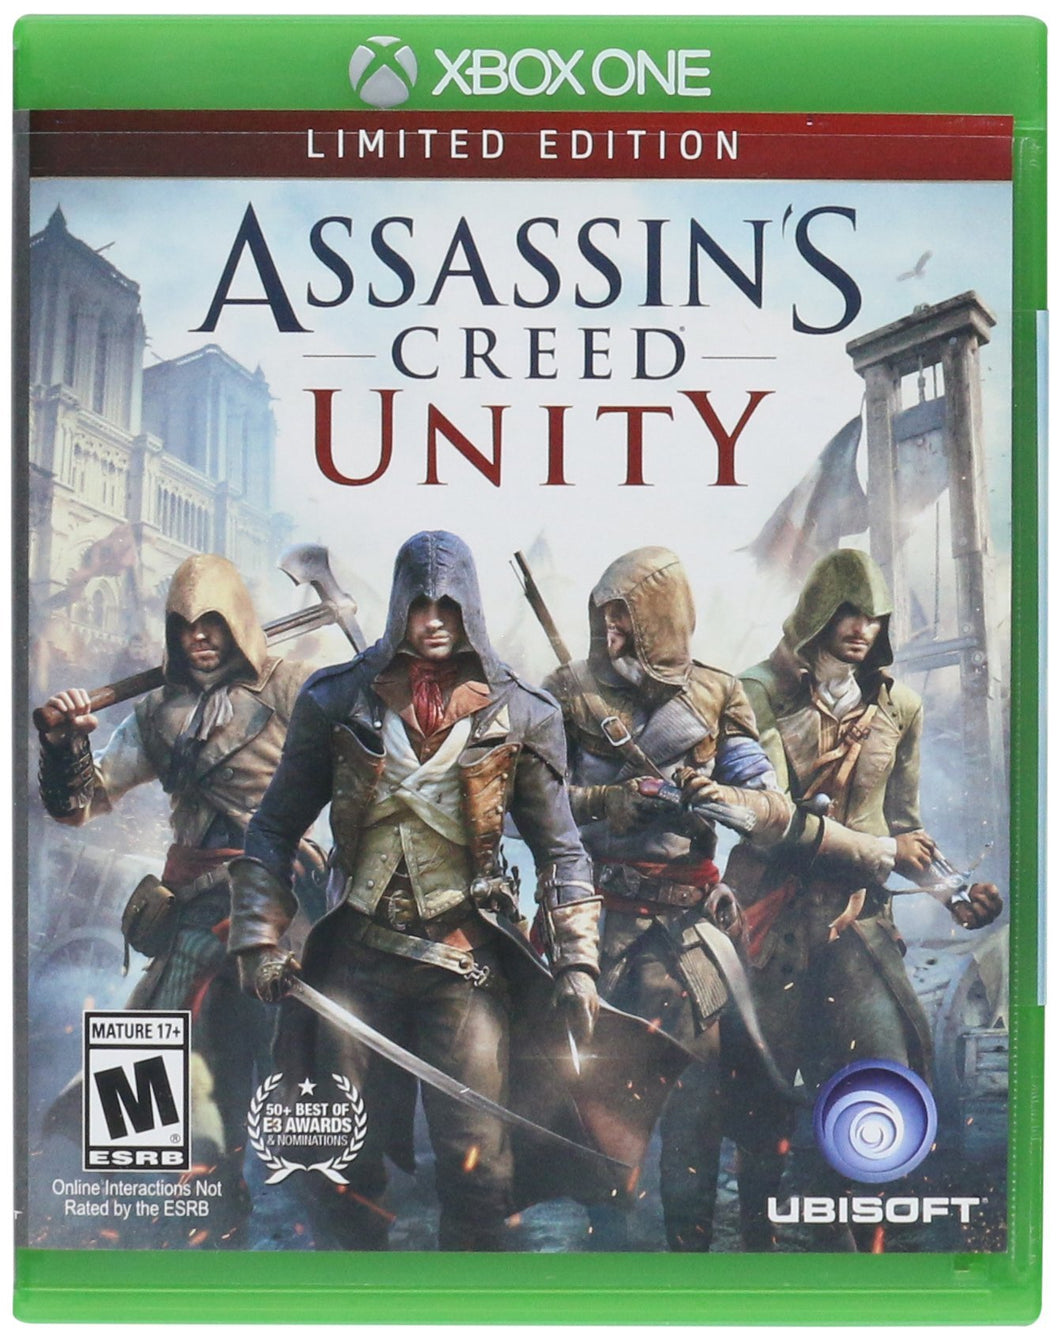 Assassin’s Creed Unity XBONE